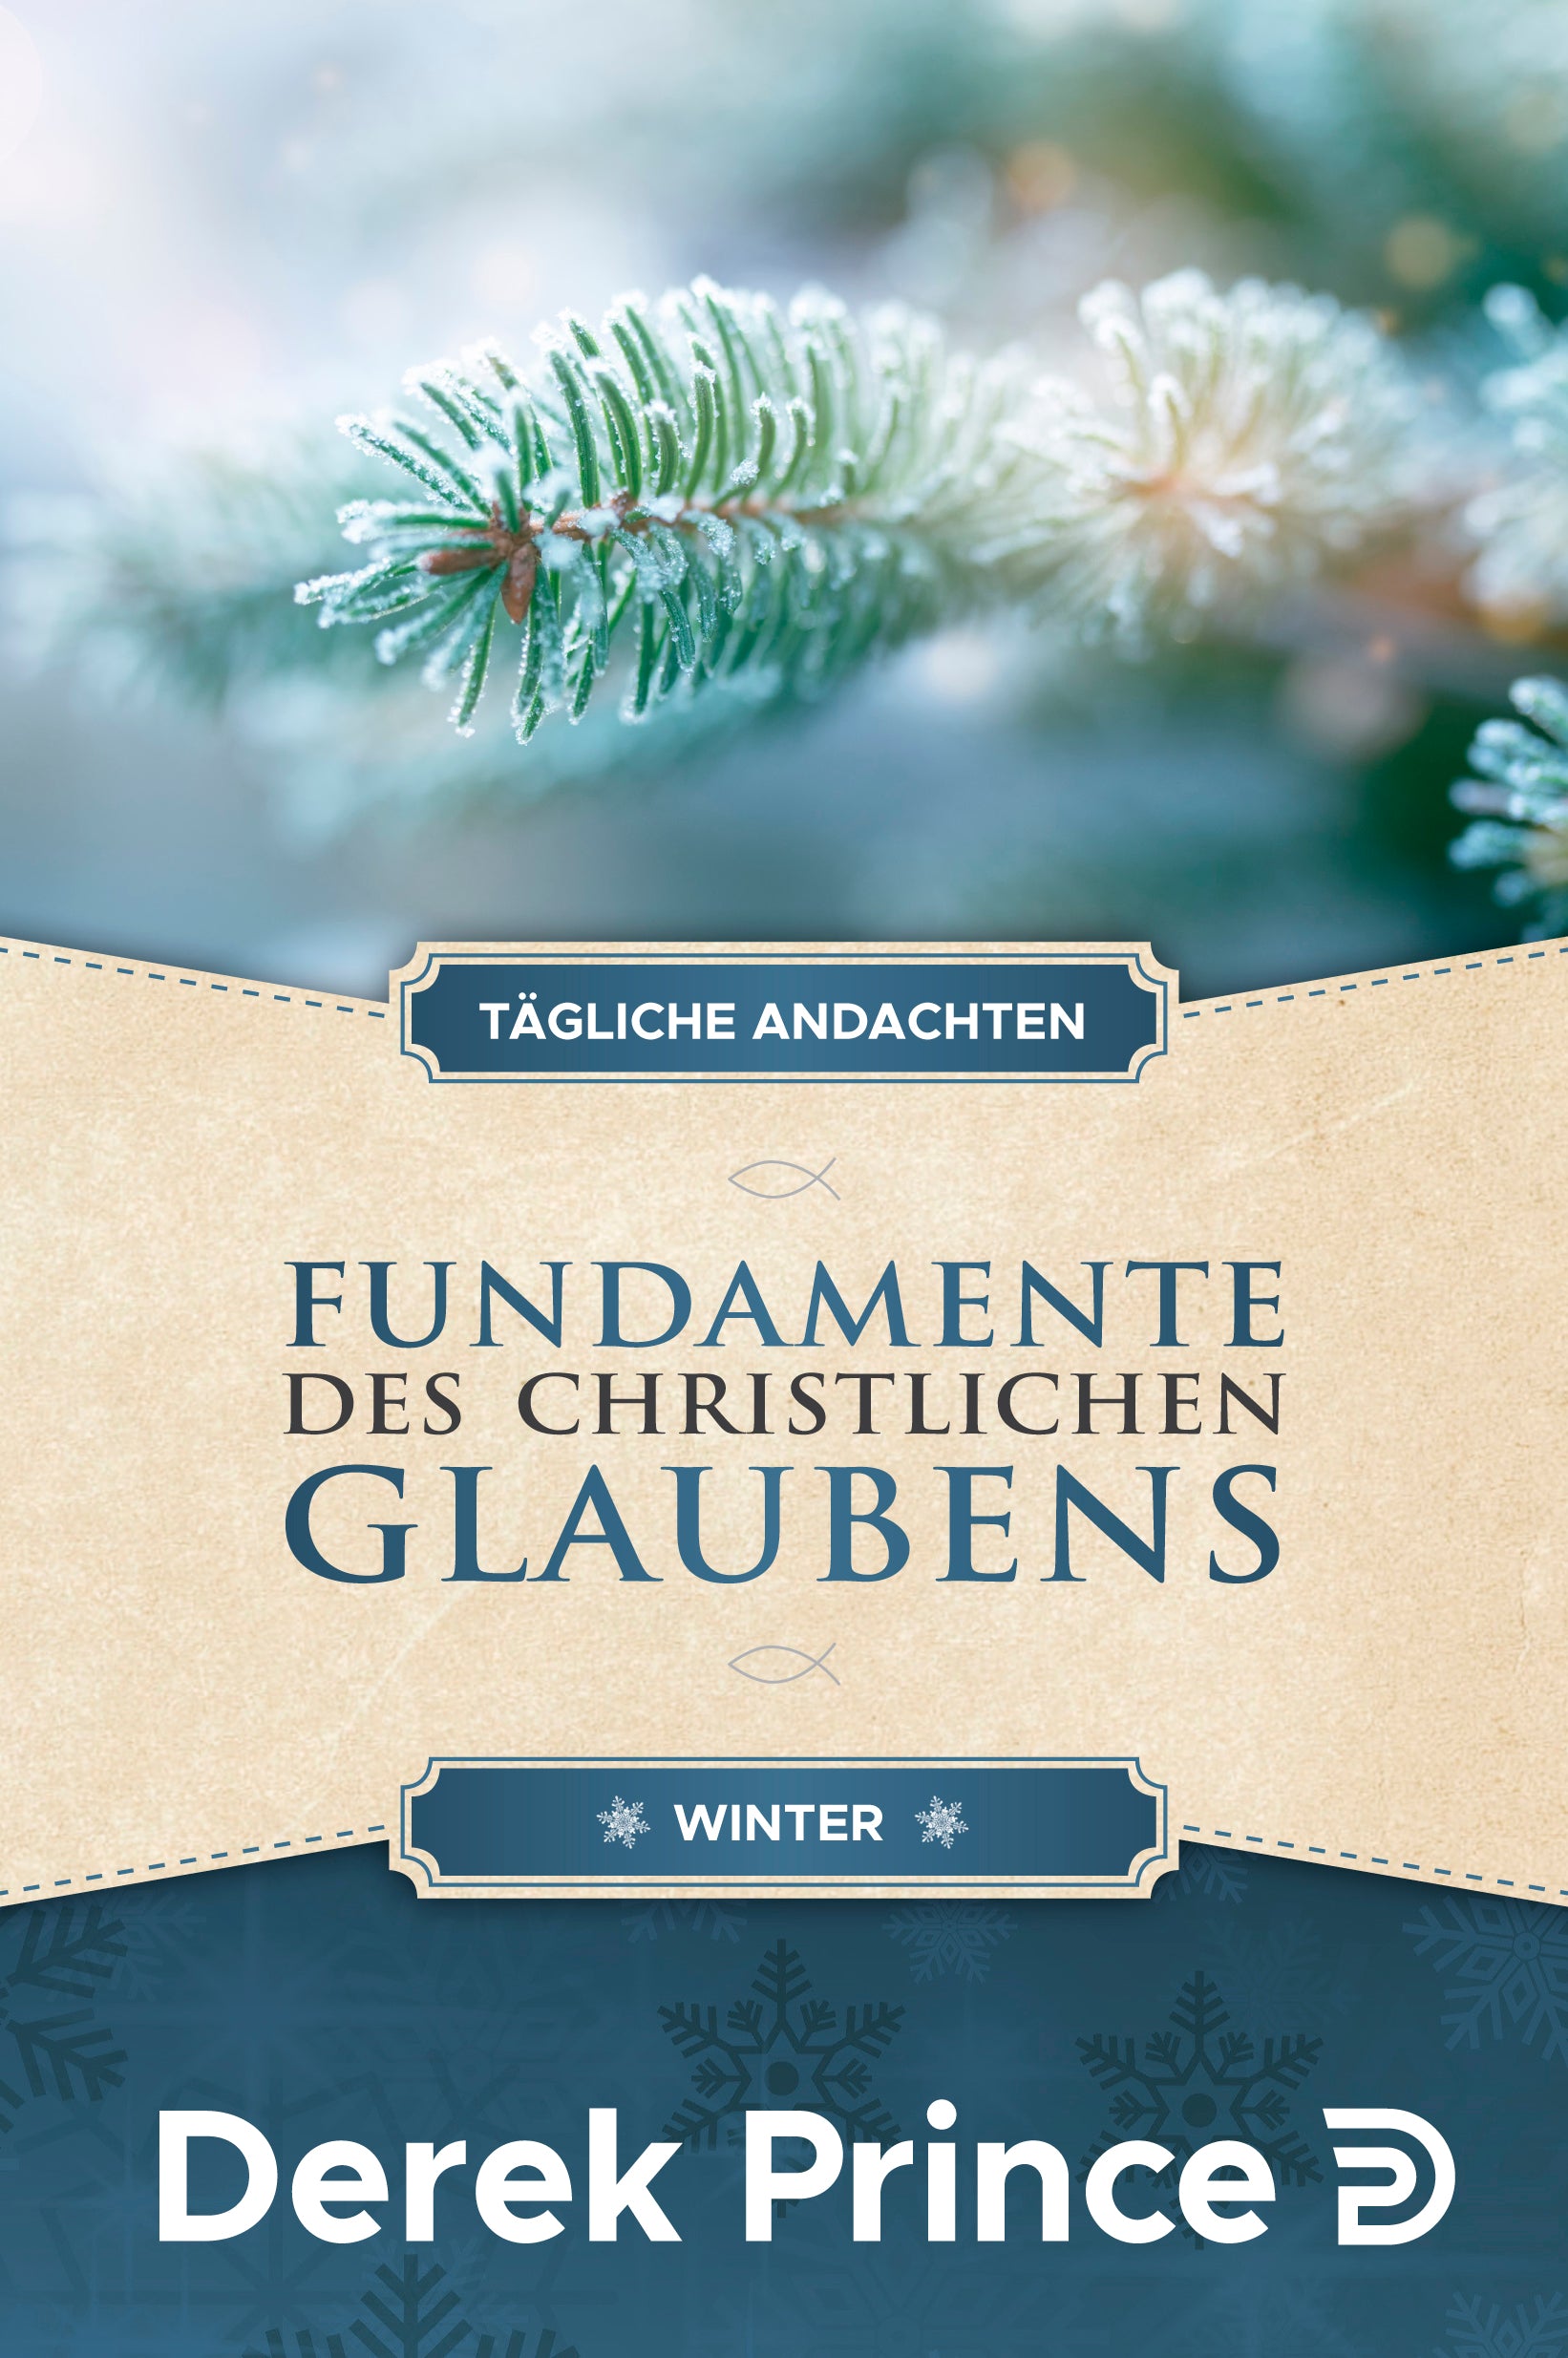 Tägliche Andachten - Fundamente des christlichen Glaubens (Winter)